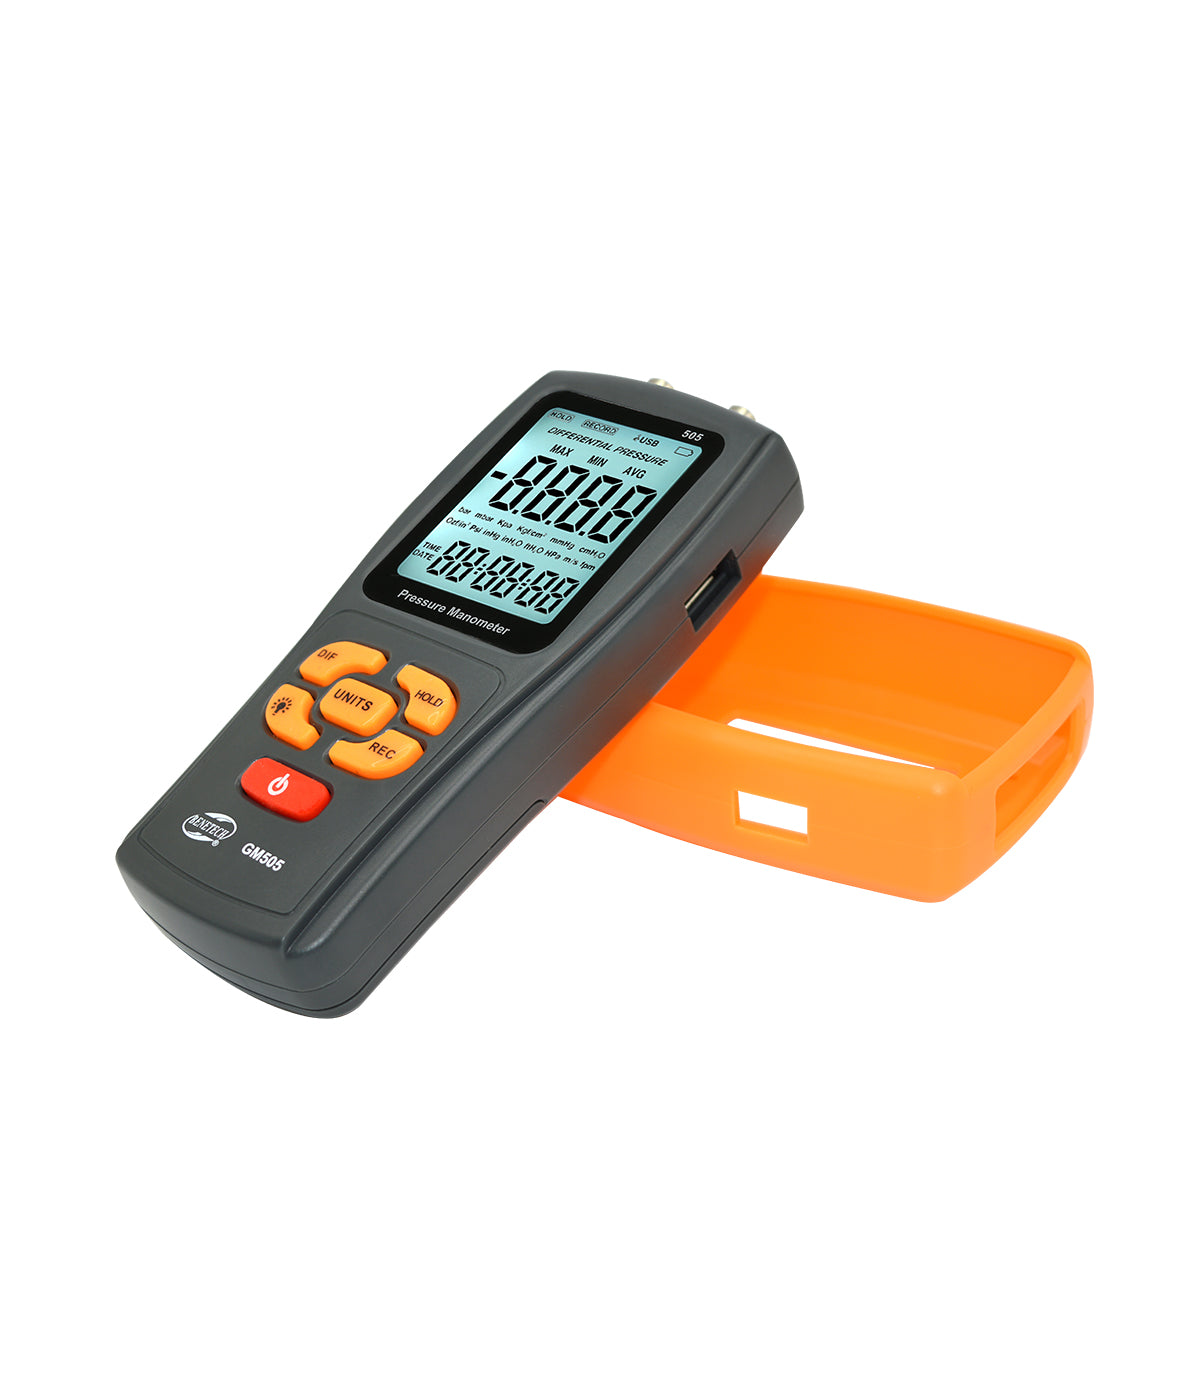 Benetech GM505 Handheld Digital Pressure Meter Manometer +/-2.49KPa Pressure Gauge Tester USB Manometer with 13 Unit Choice